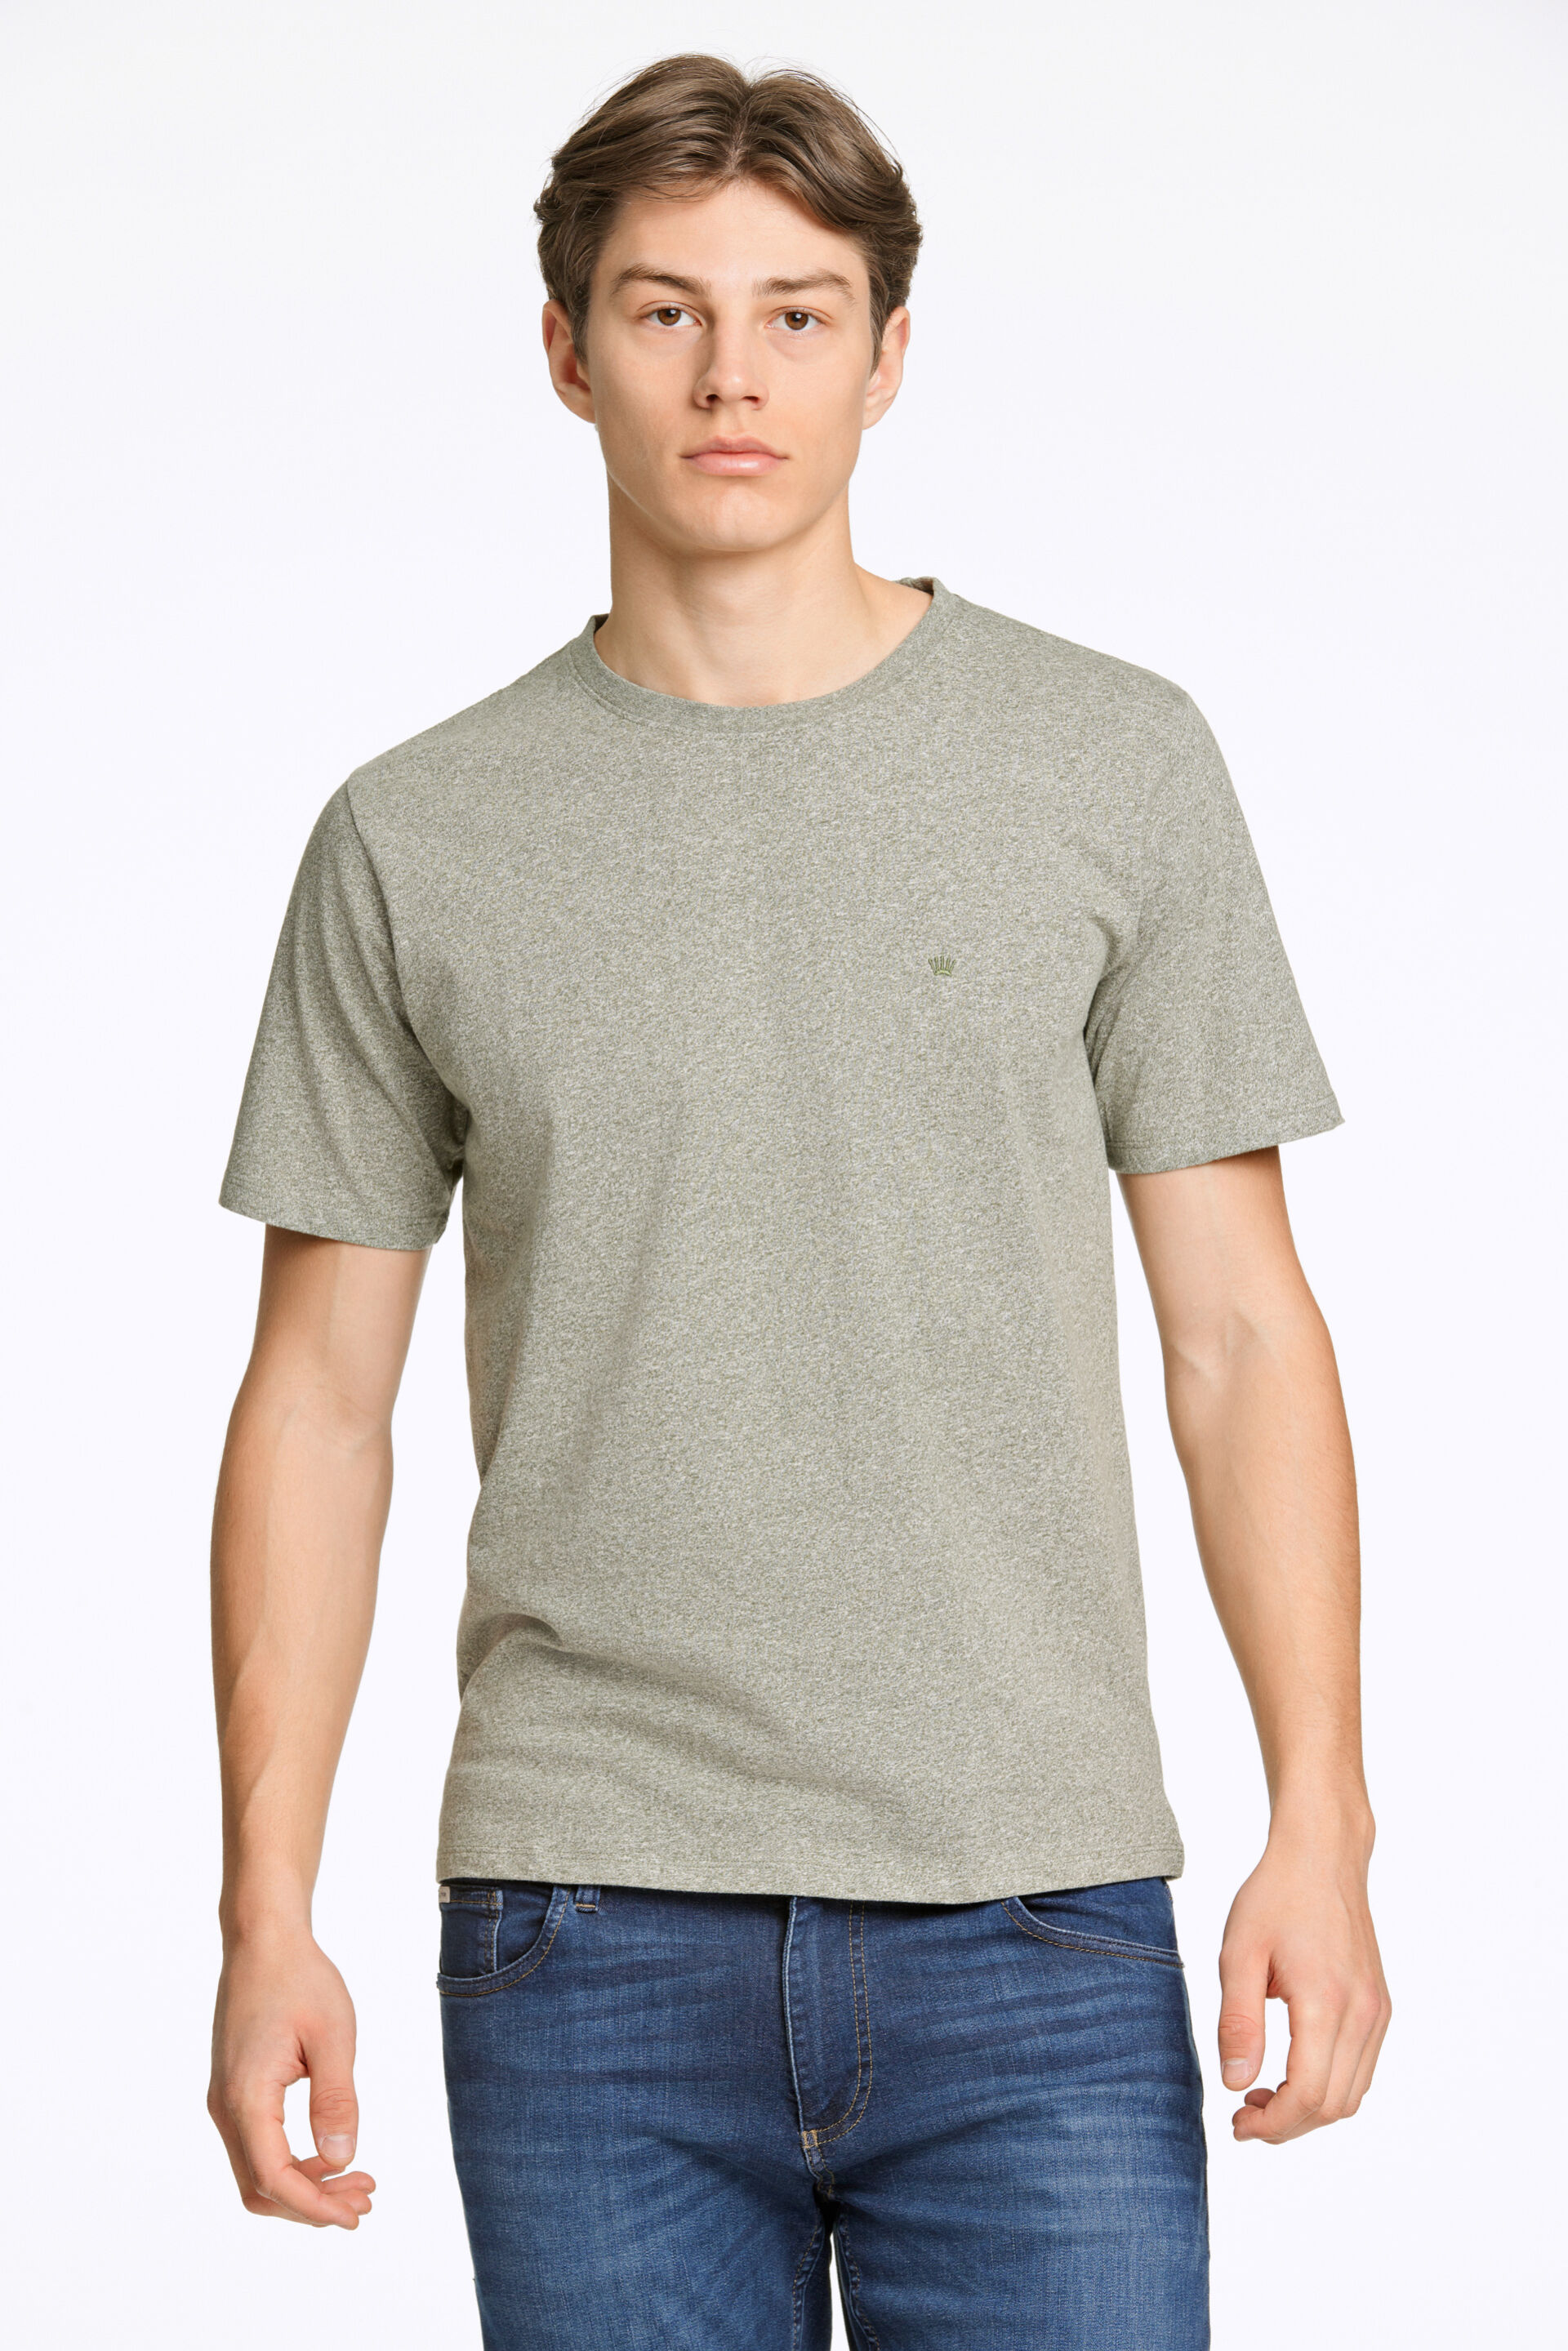 Junk de Luxe  T-shirt Grön 60-455009